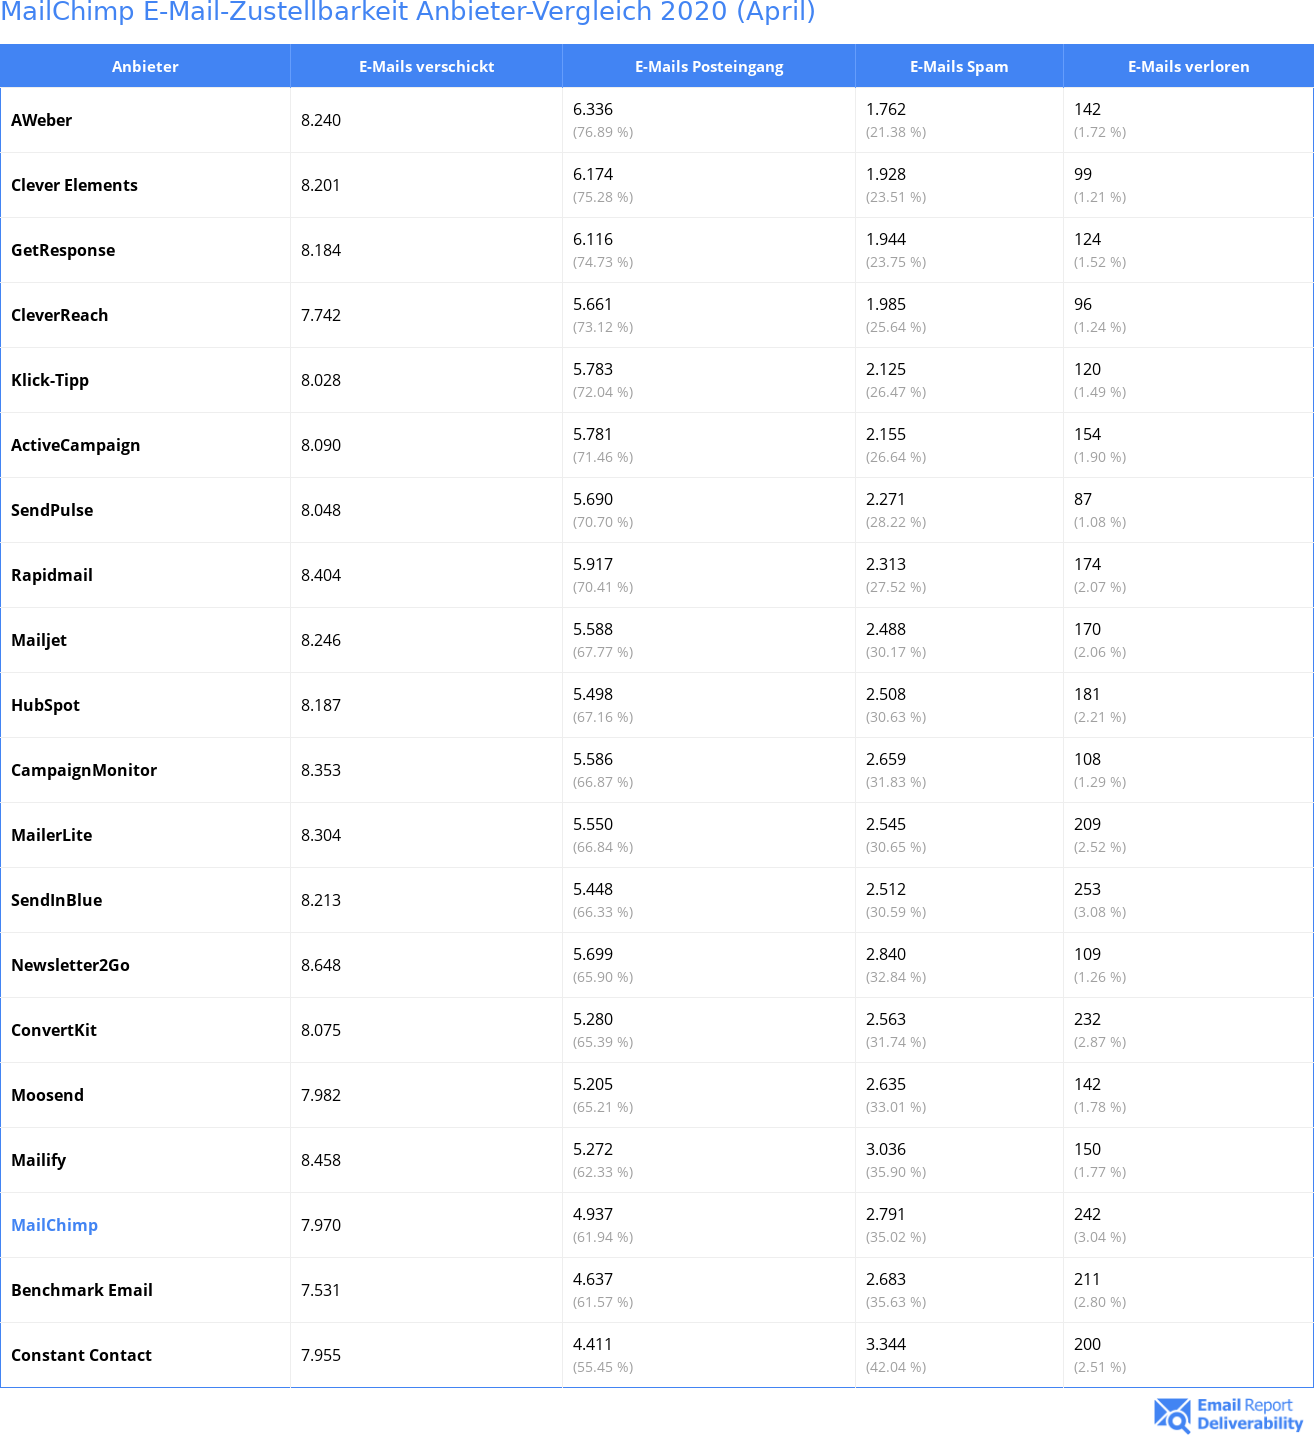 MailChimp E-Mail-Zustellbarkeit Anbieter-Vergleich 2020 (April)